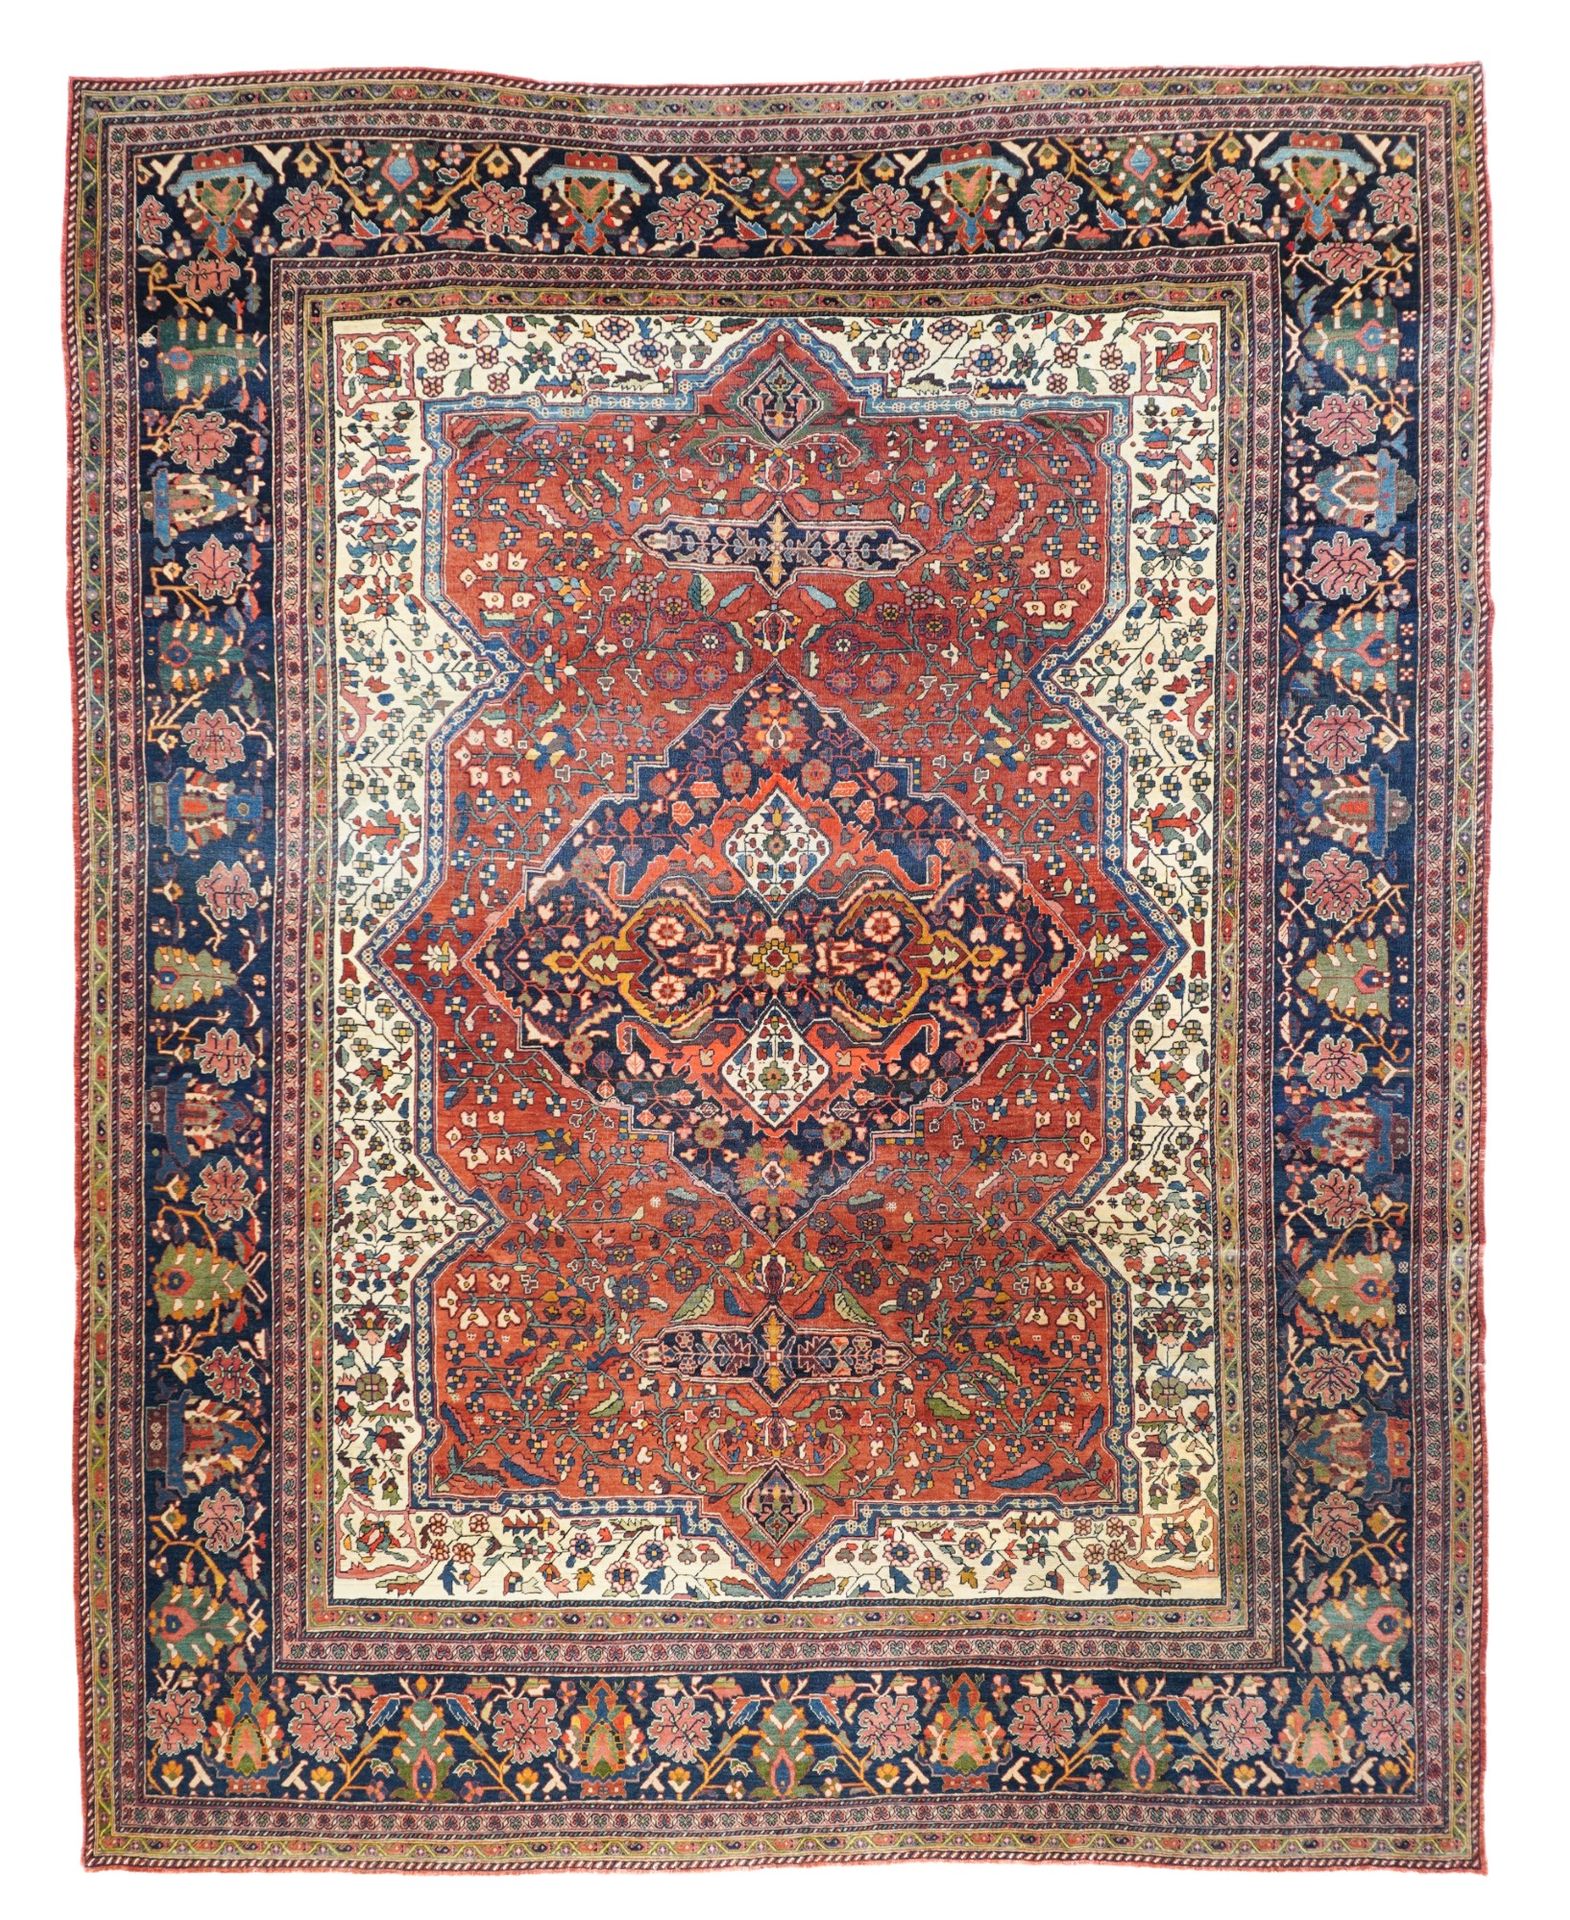 Null 古董法拉汉萨鲁克地毯，8'11" x 11'4" ( 2.72 x 3.45 M )